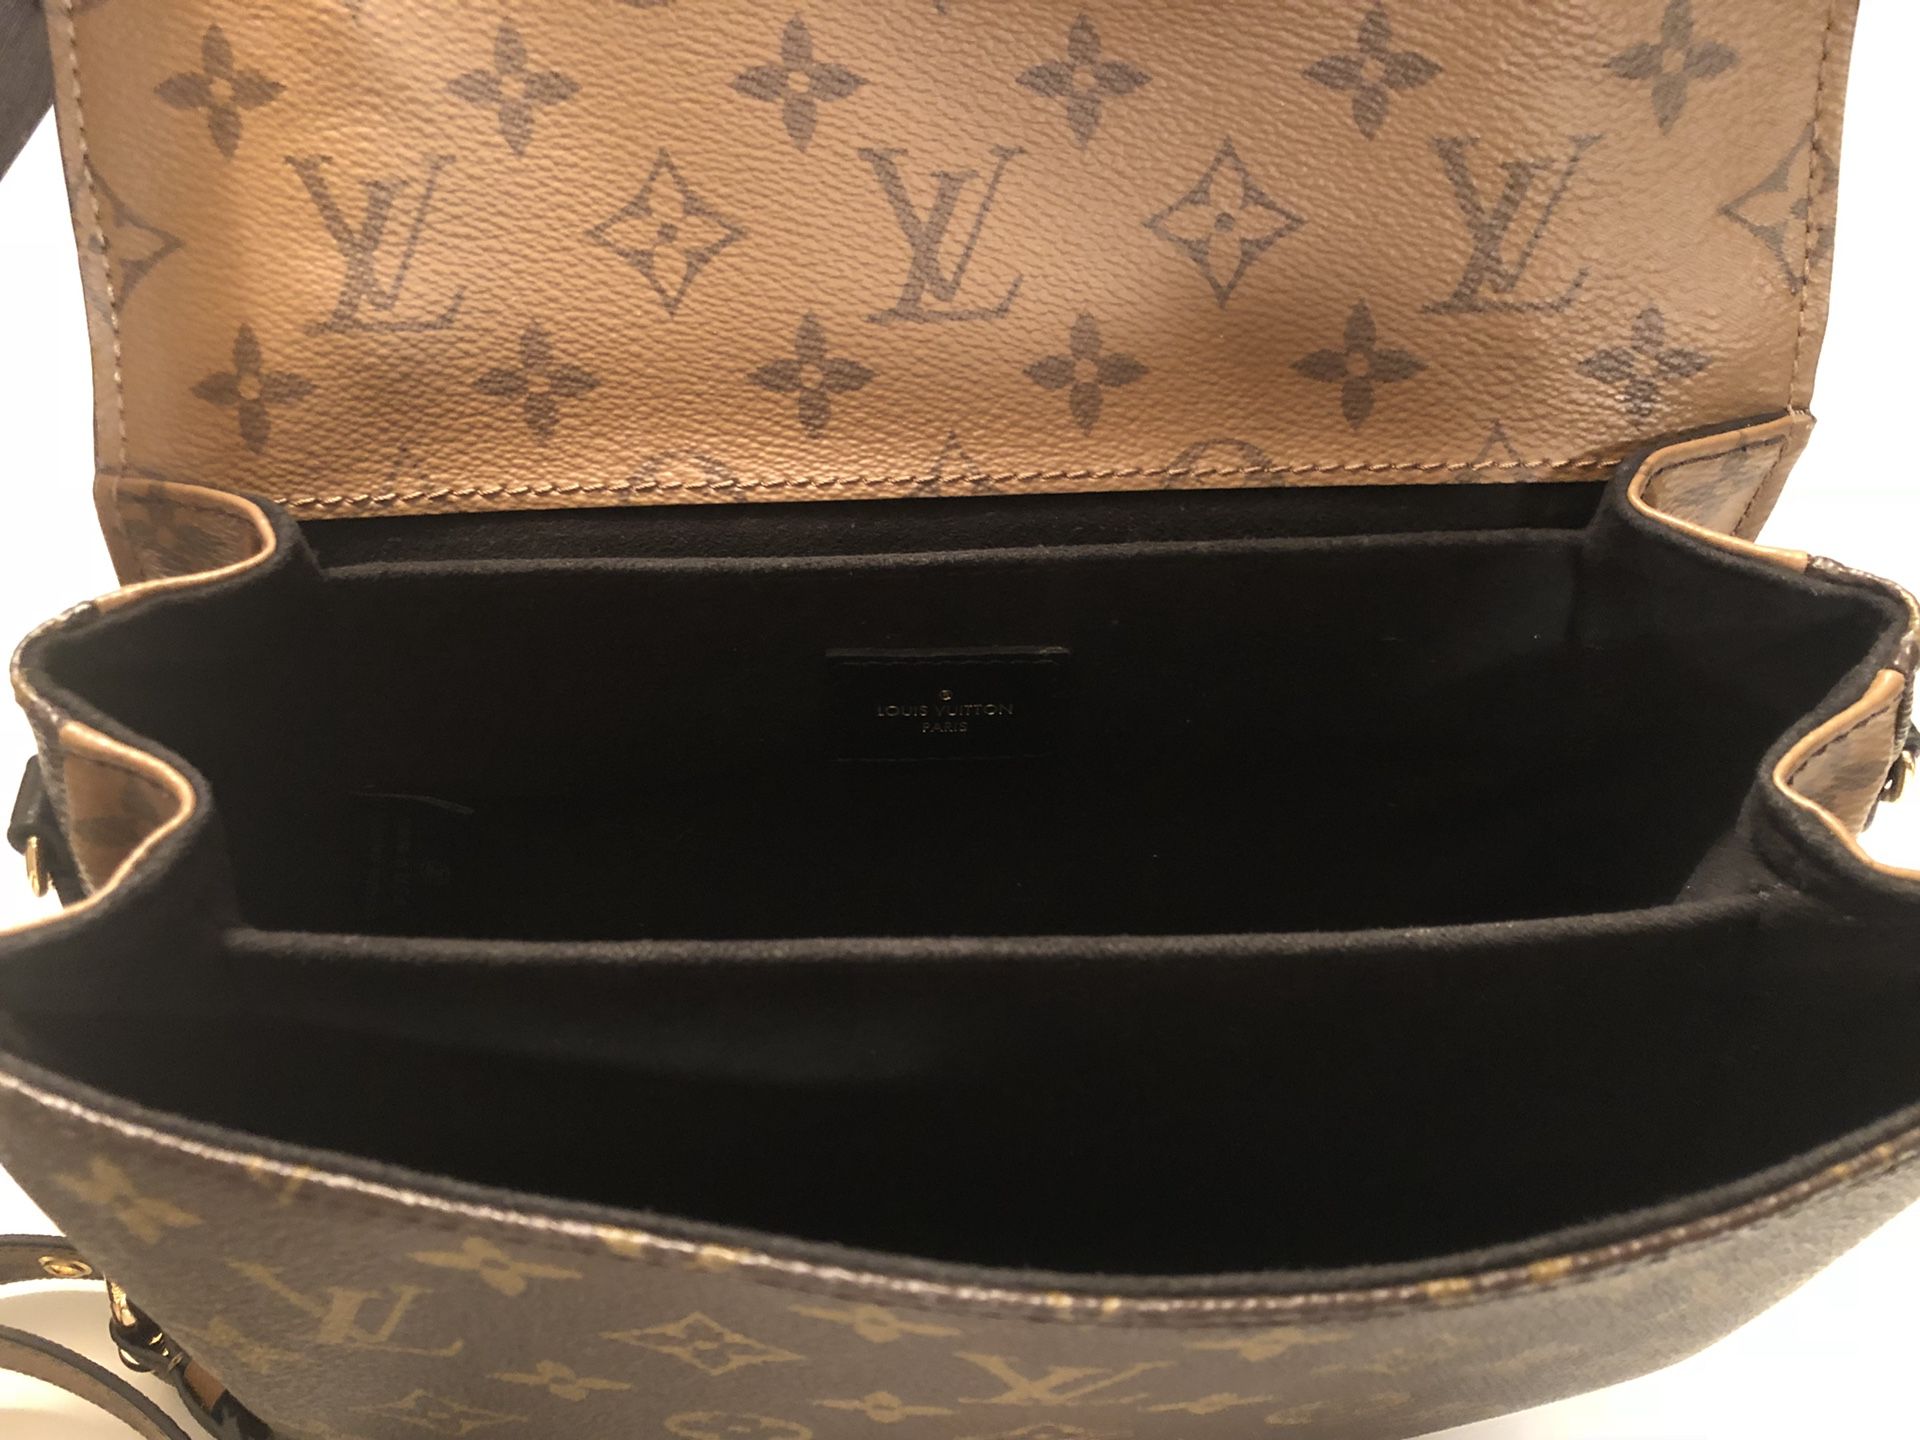 Original Louis Vuitton Pochette Métis Purse for Sale in Scottsdale, AZ -  OfferUp